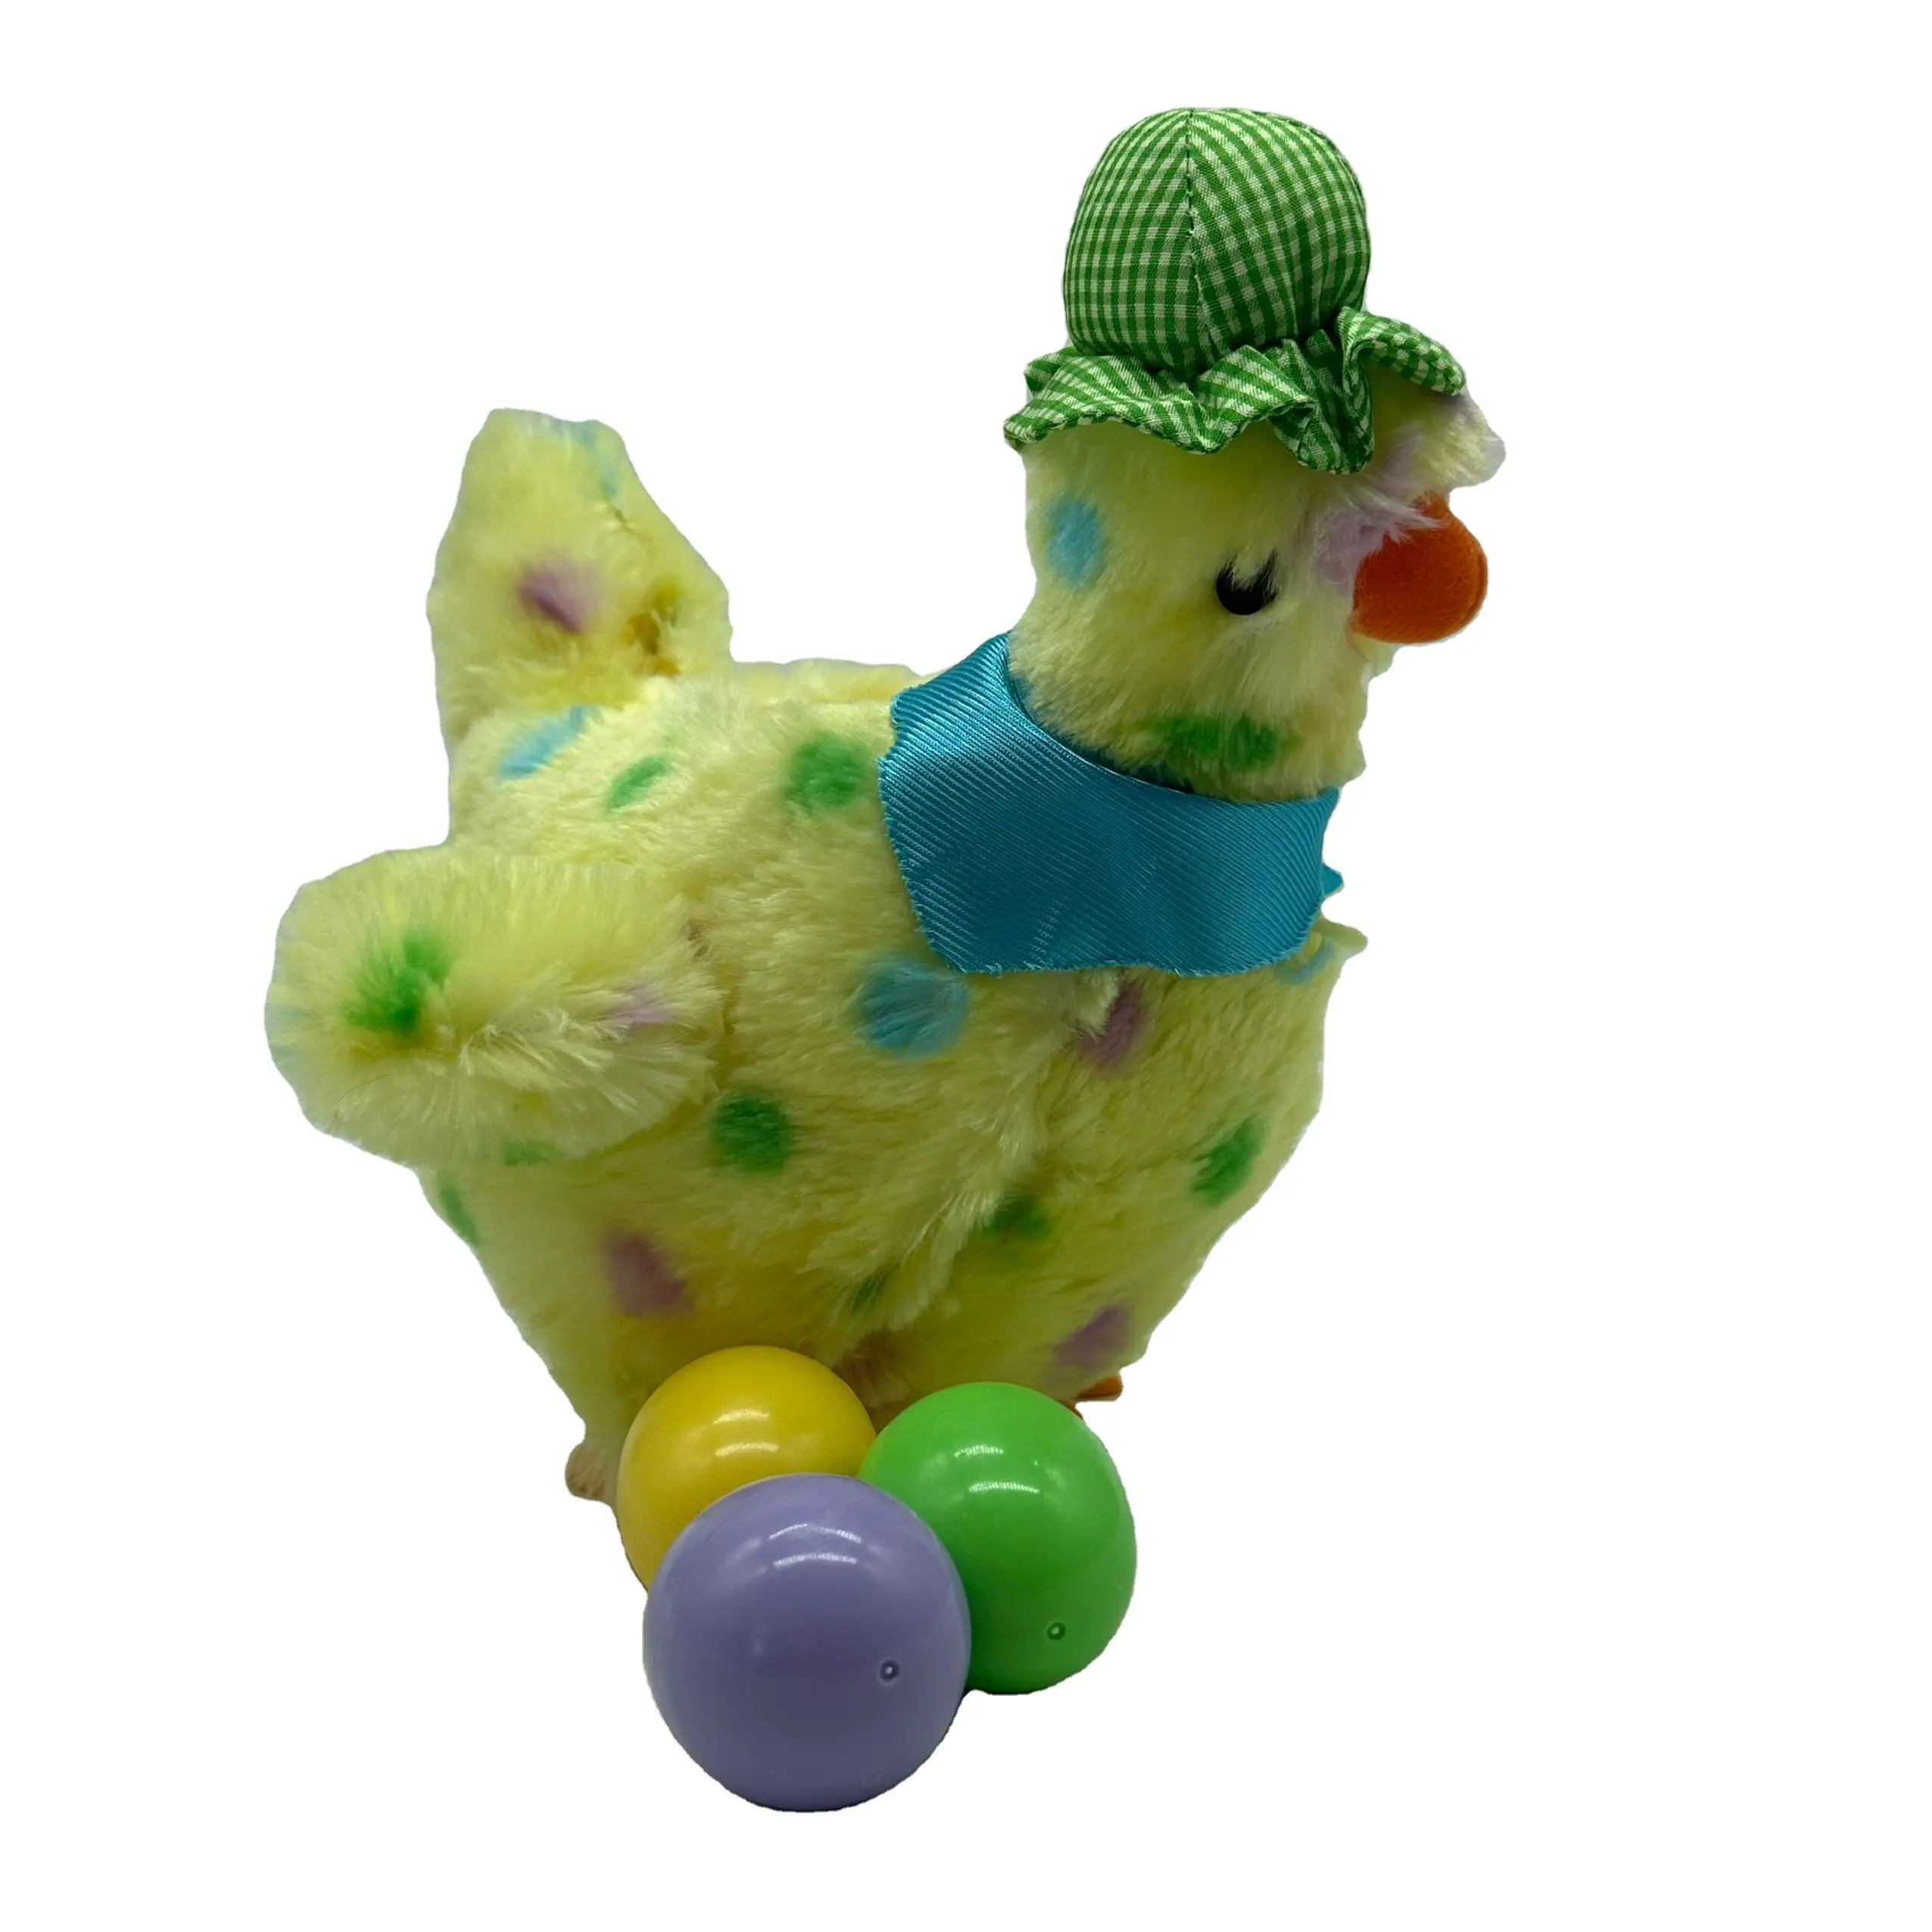 ของขวัญอีสเตอร์ ตุ๊กตาเป็ดไฟฟ้า สีเหลือง ตุ๊กตาสัตว์เดิน ร้องเพลง วางไข่ ของเล่นเป็ด